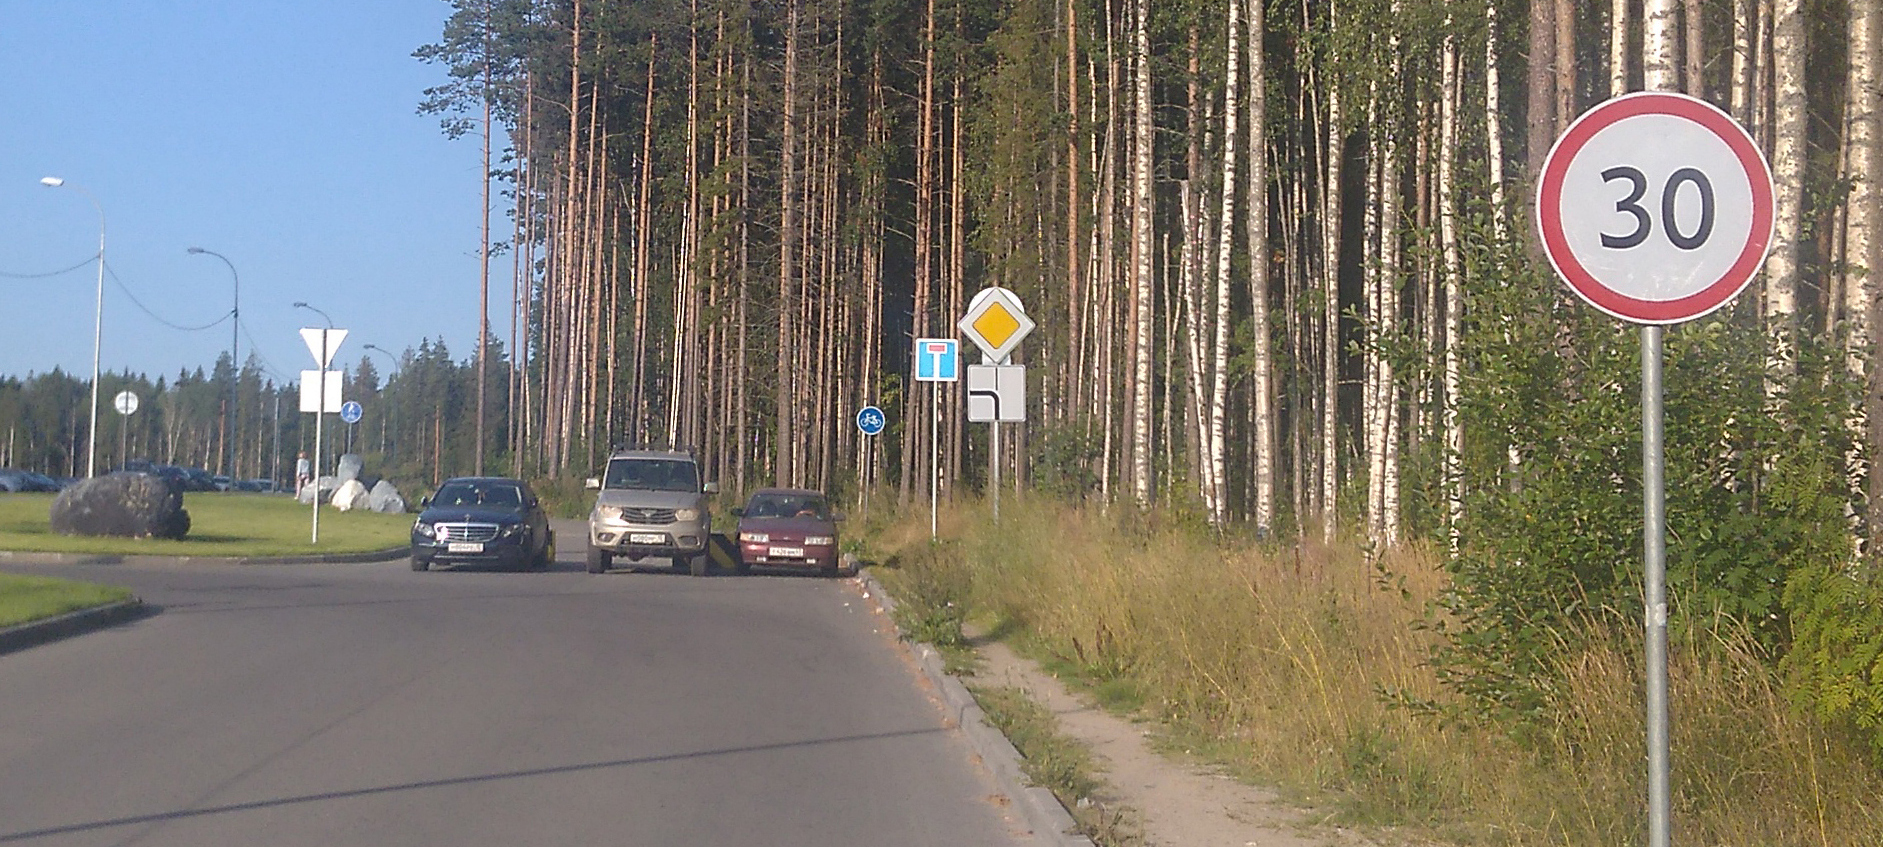 Автошкола "Престиж": В Петрозаводске не хватает предупреждающих дорожных знаков